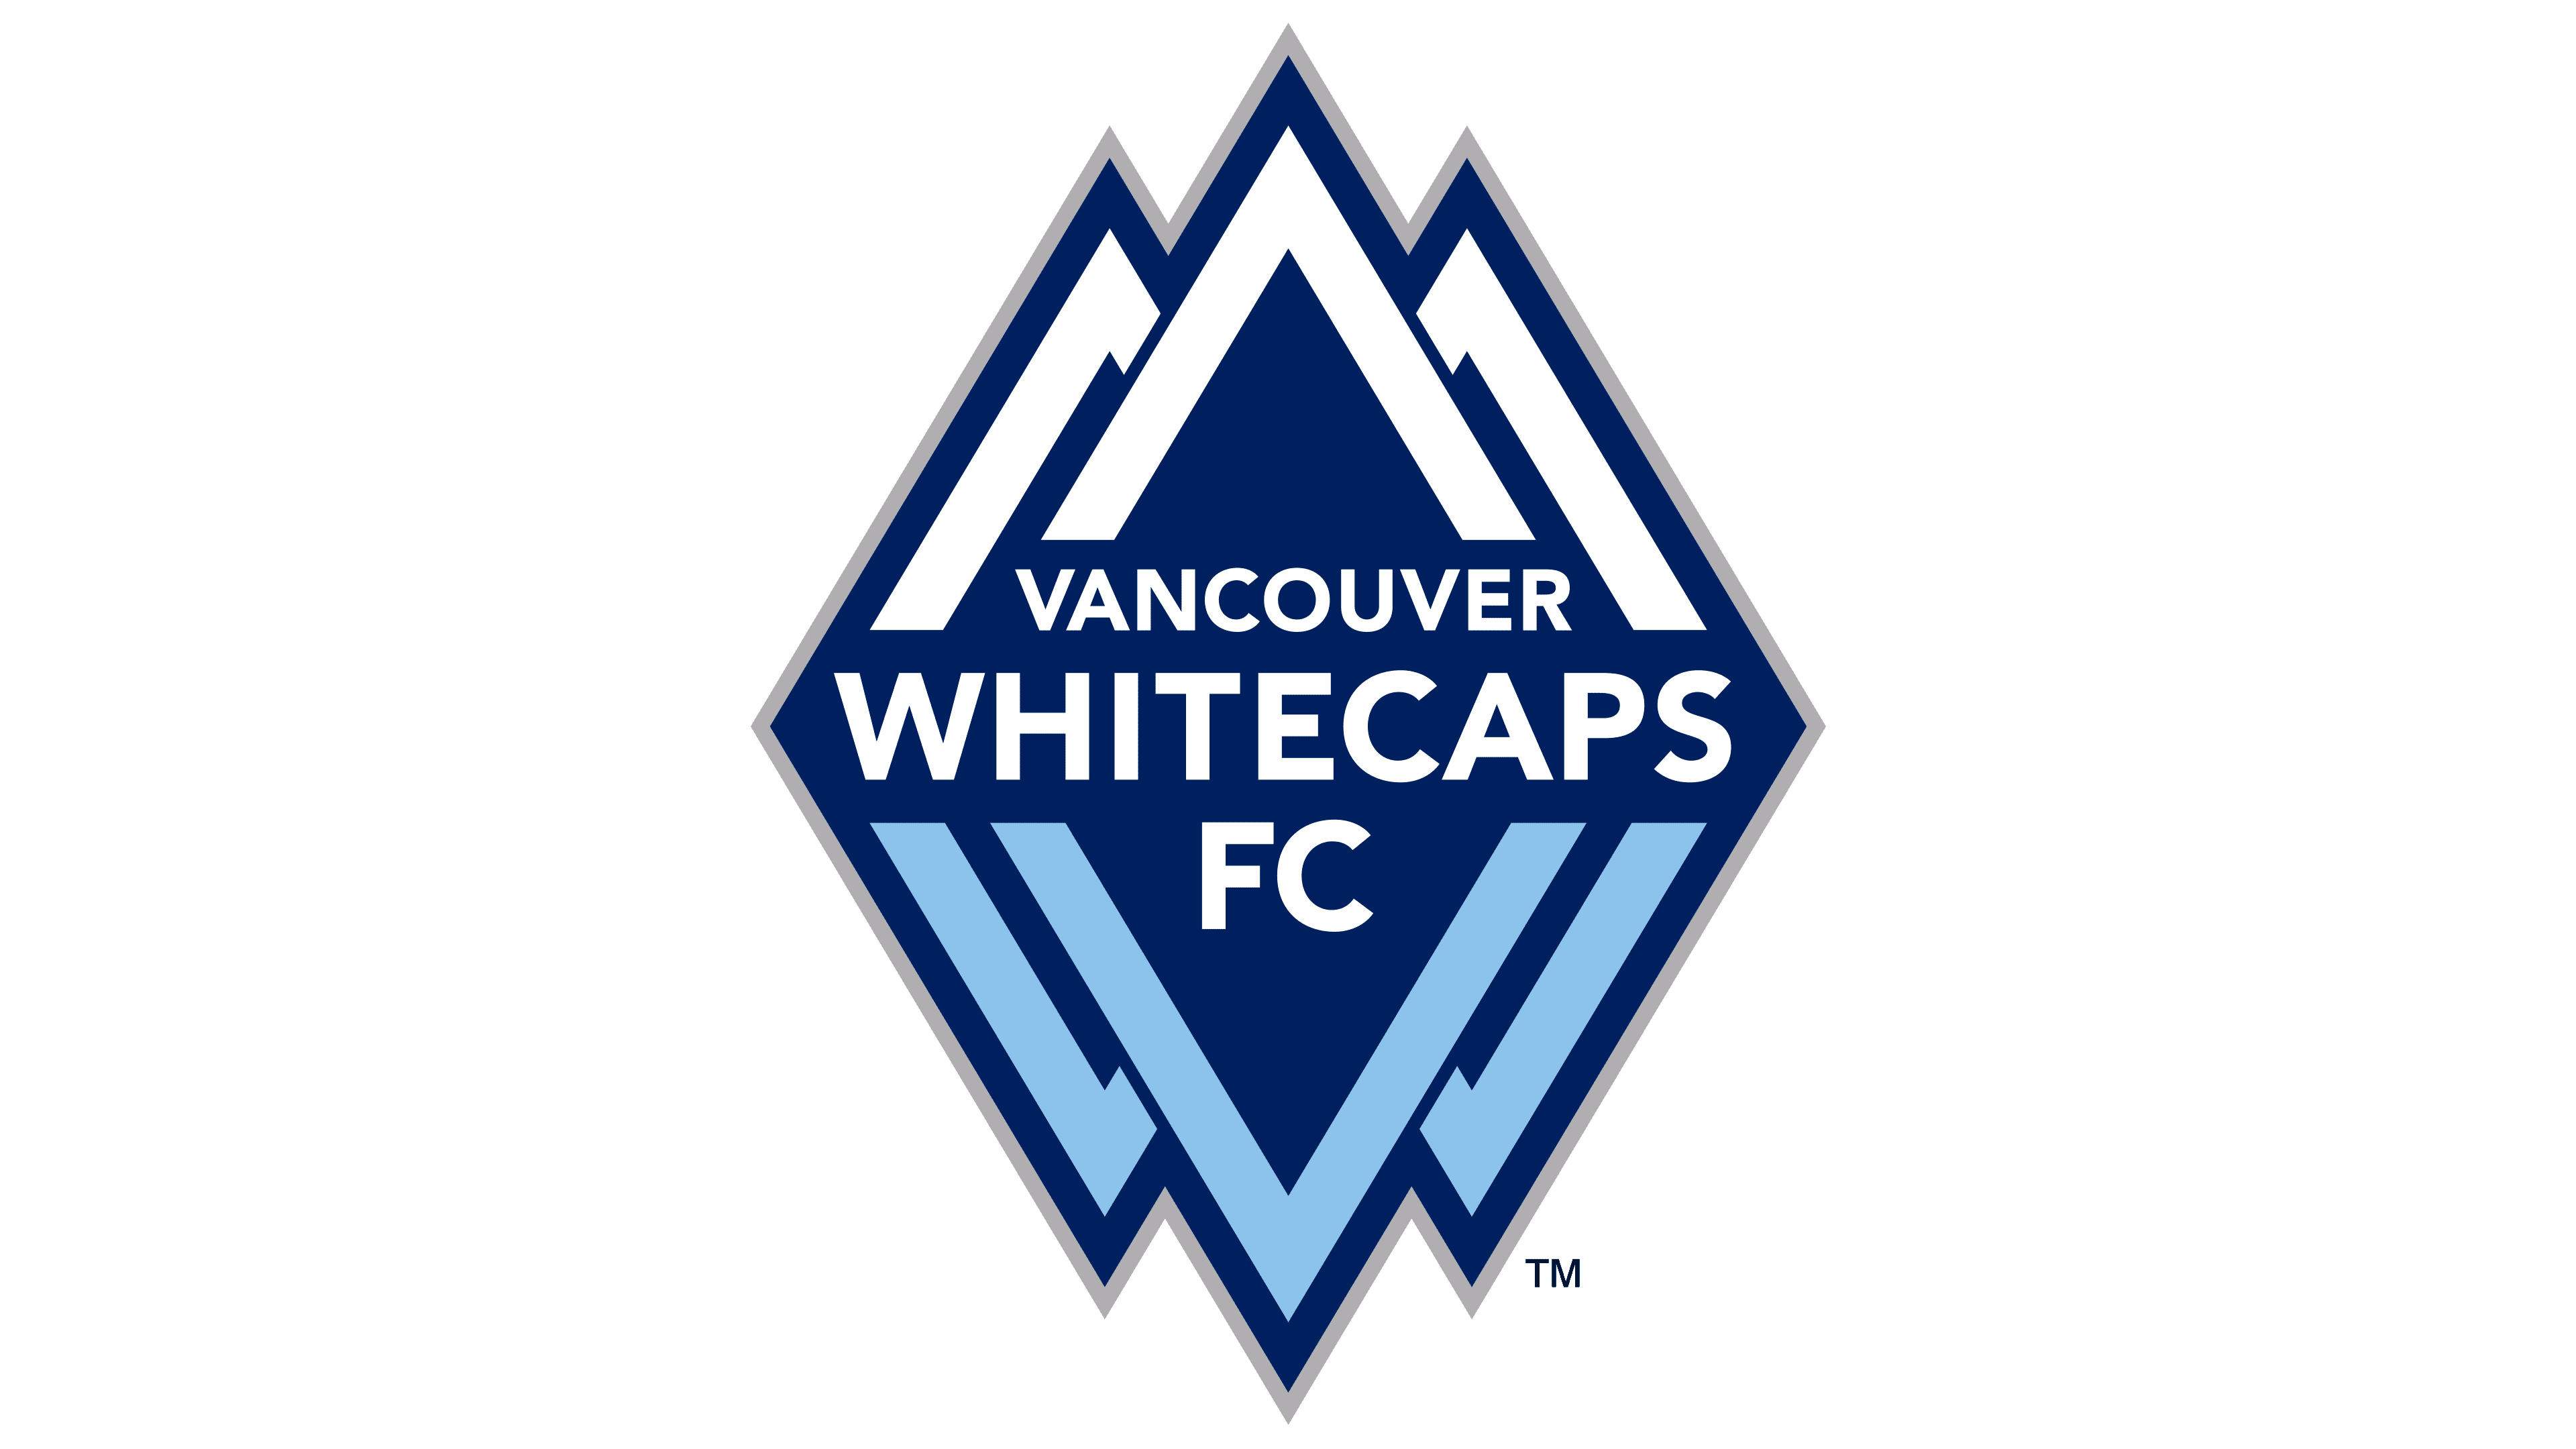 Vancouver-Whitecaps-logo2